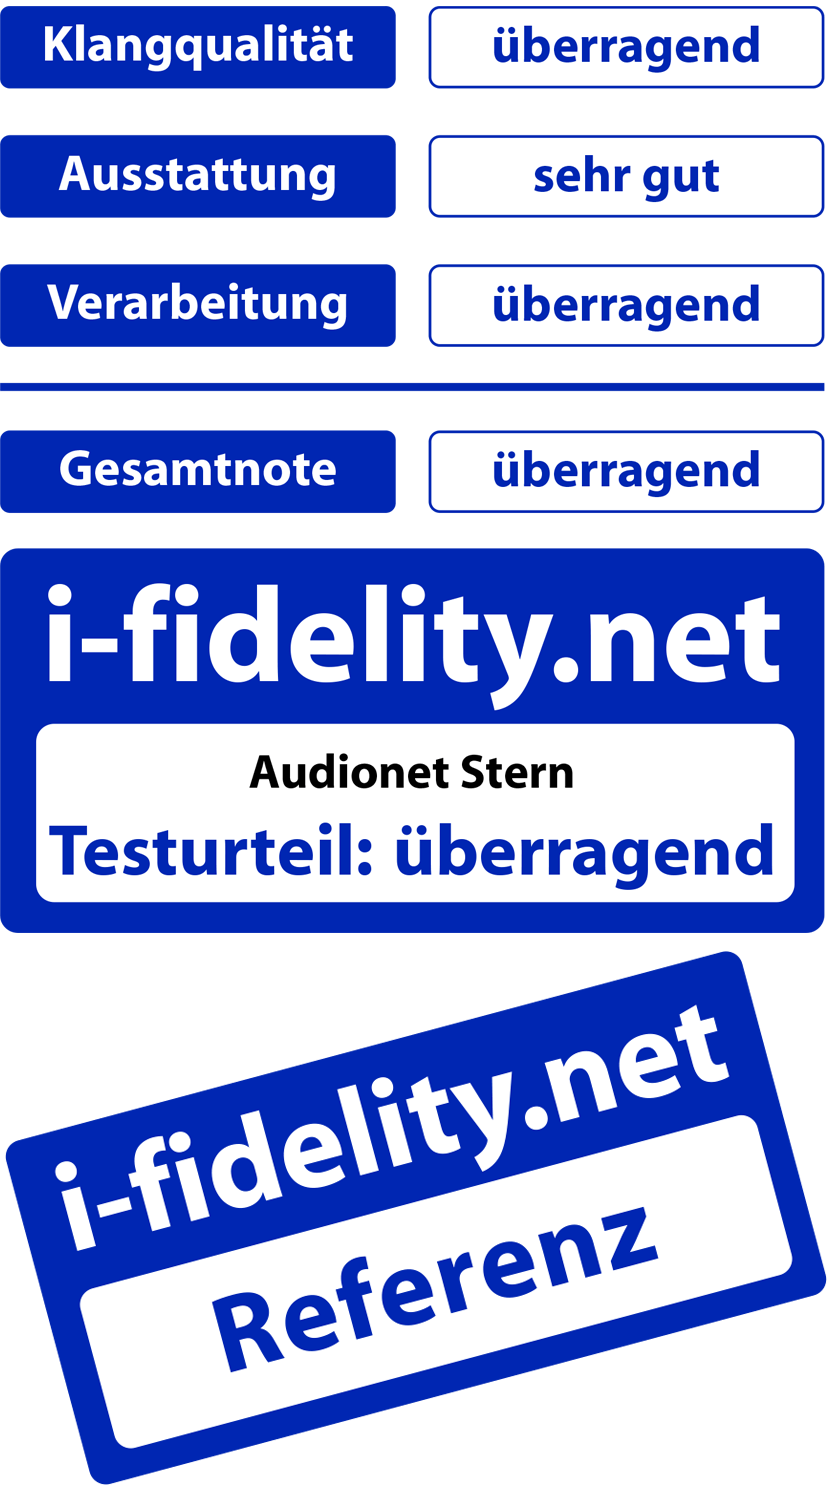 Audionet STERN i-fidelity.net Testurteil überragend